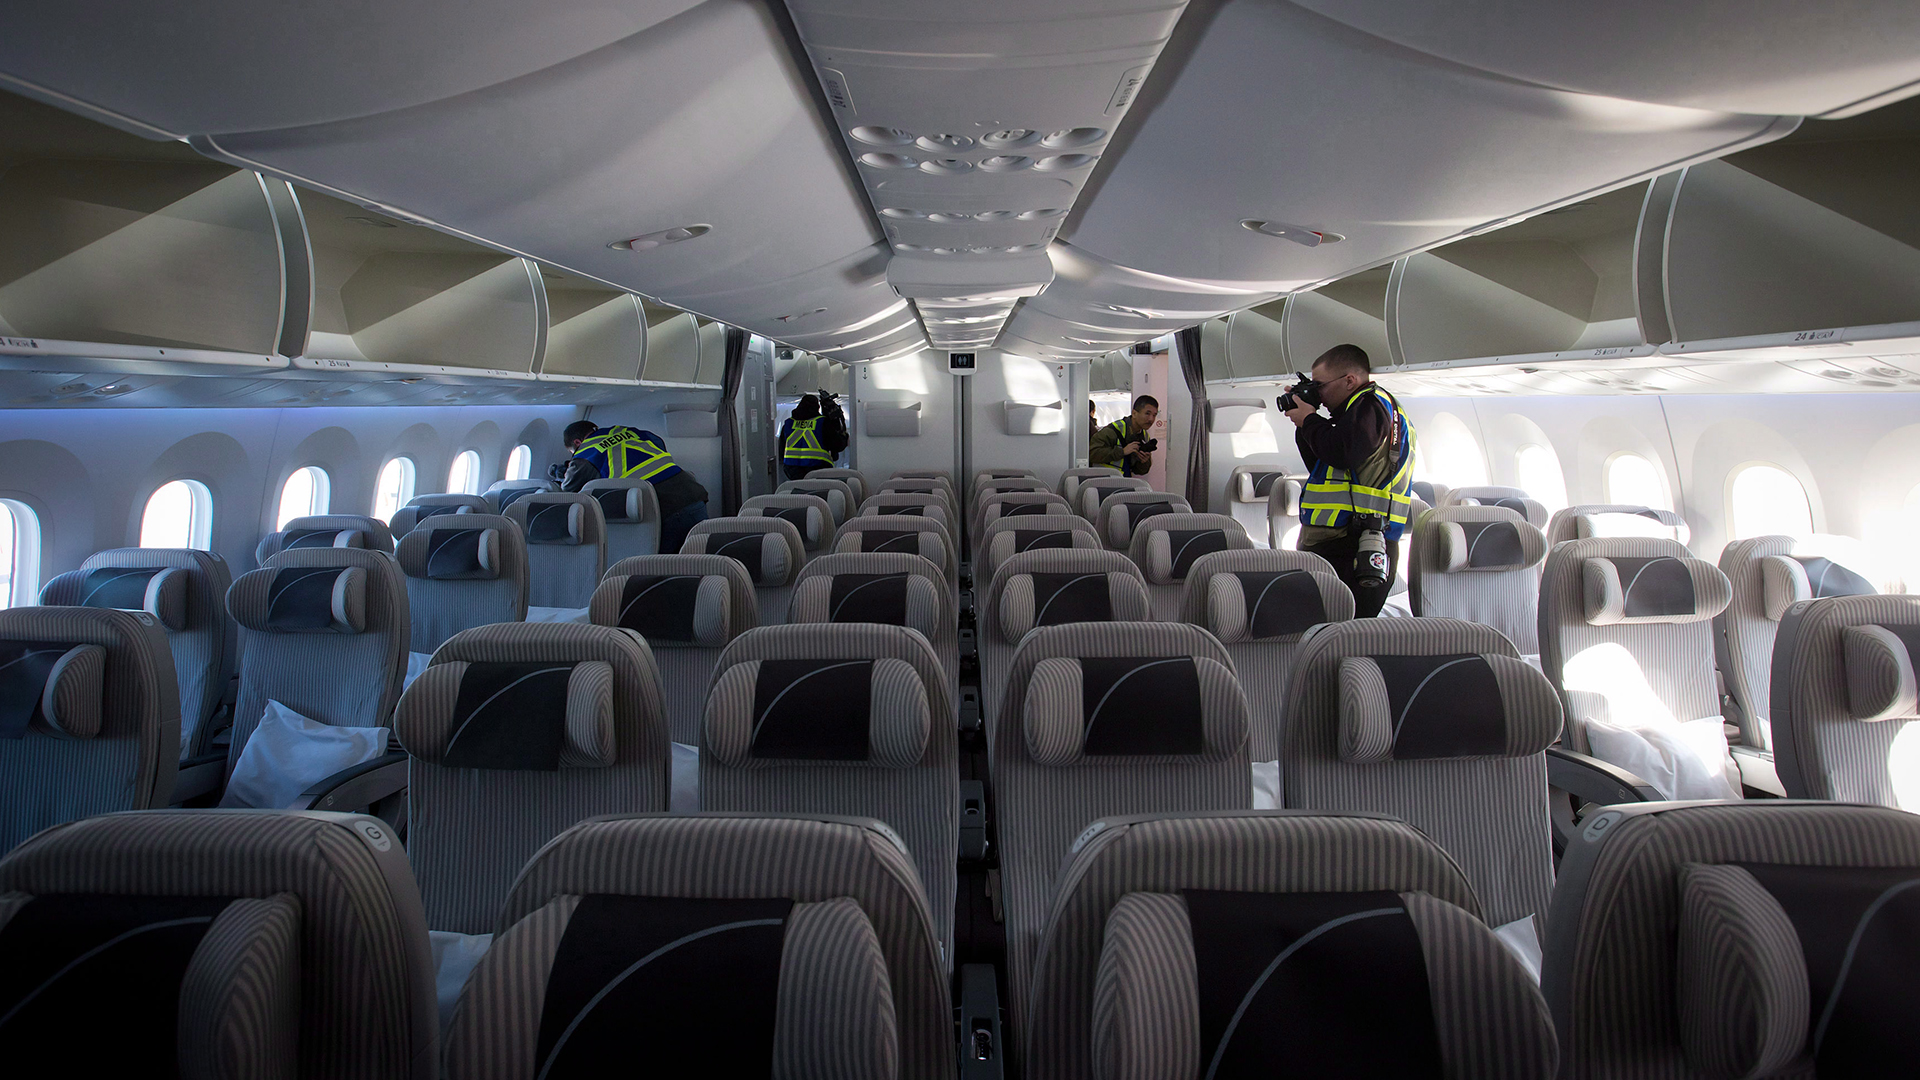 Des membres des médias prennent des photos et enregistrent des vidéos dans la cabine économique avant d'un Boeing 787-800 Dreamliner après son arrivée à l'aéroport international de Vancouver, à Richmond, en Colombie-Britannique, le lundi 3 février 2014.